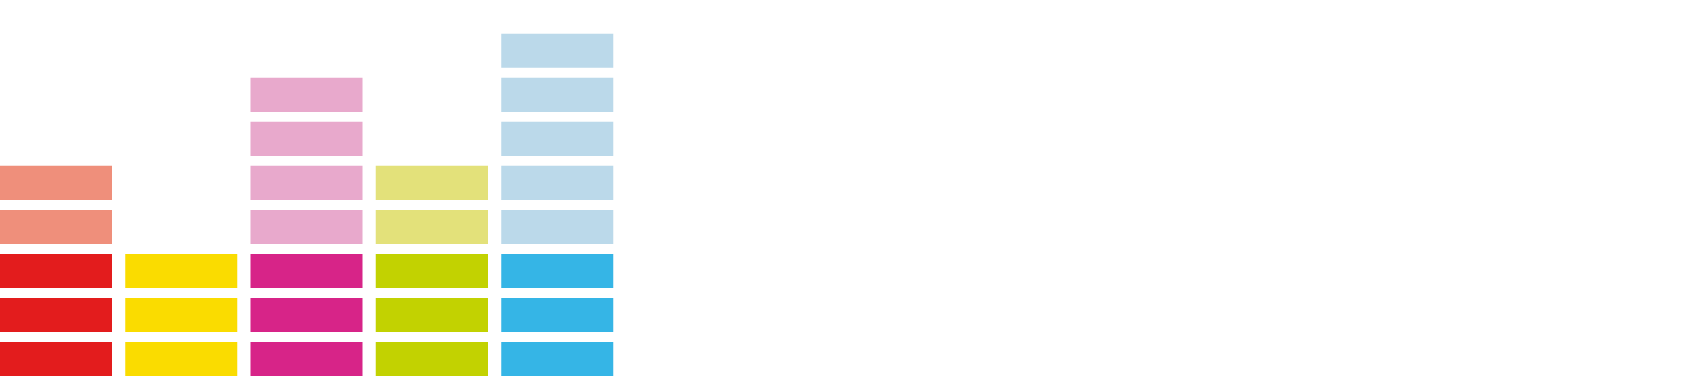 Deezer Logo - Deezer PNG Transparent Deezer.PNG Images. | PlusPNG